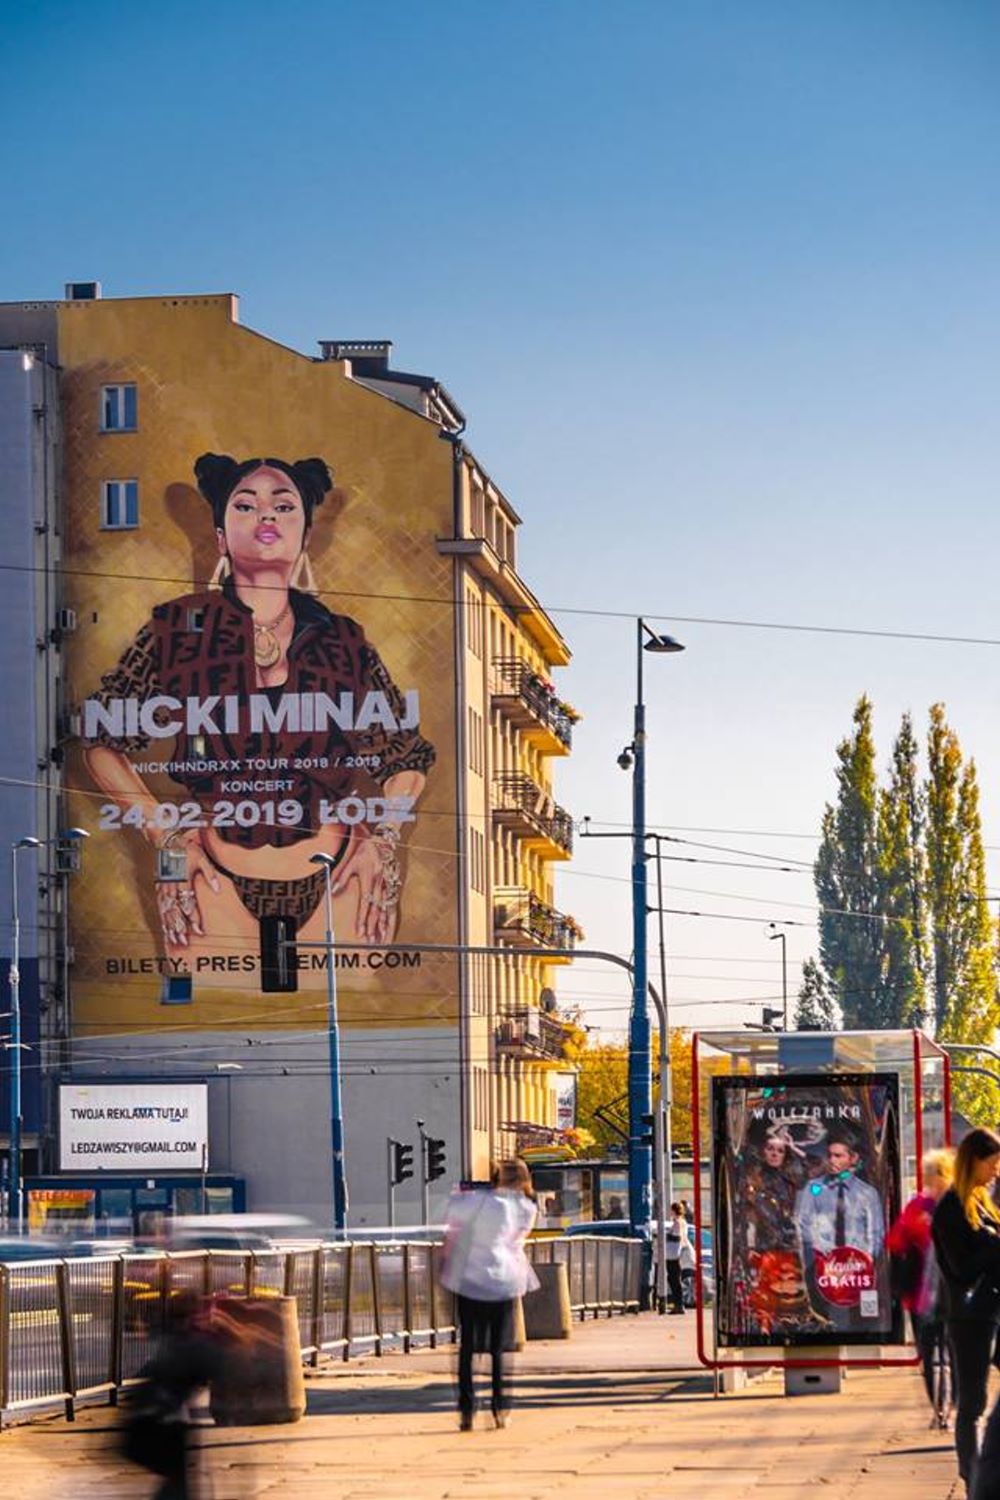 Nicki Minaj mural w Warszawie 2